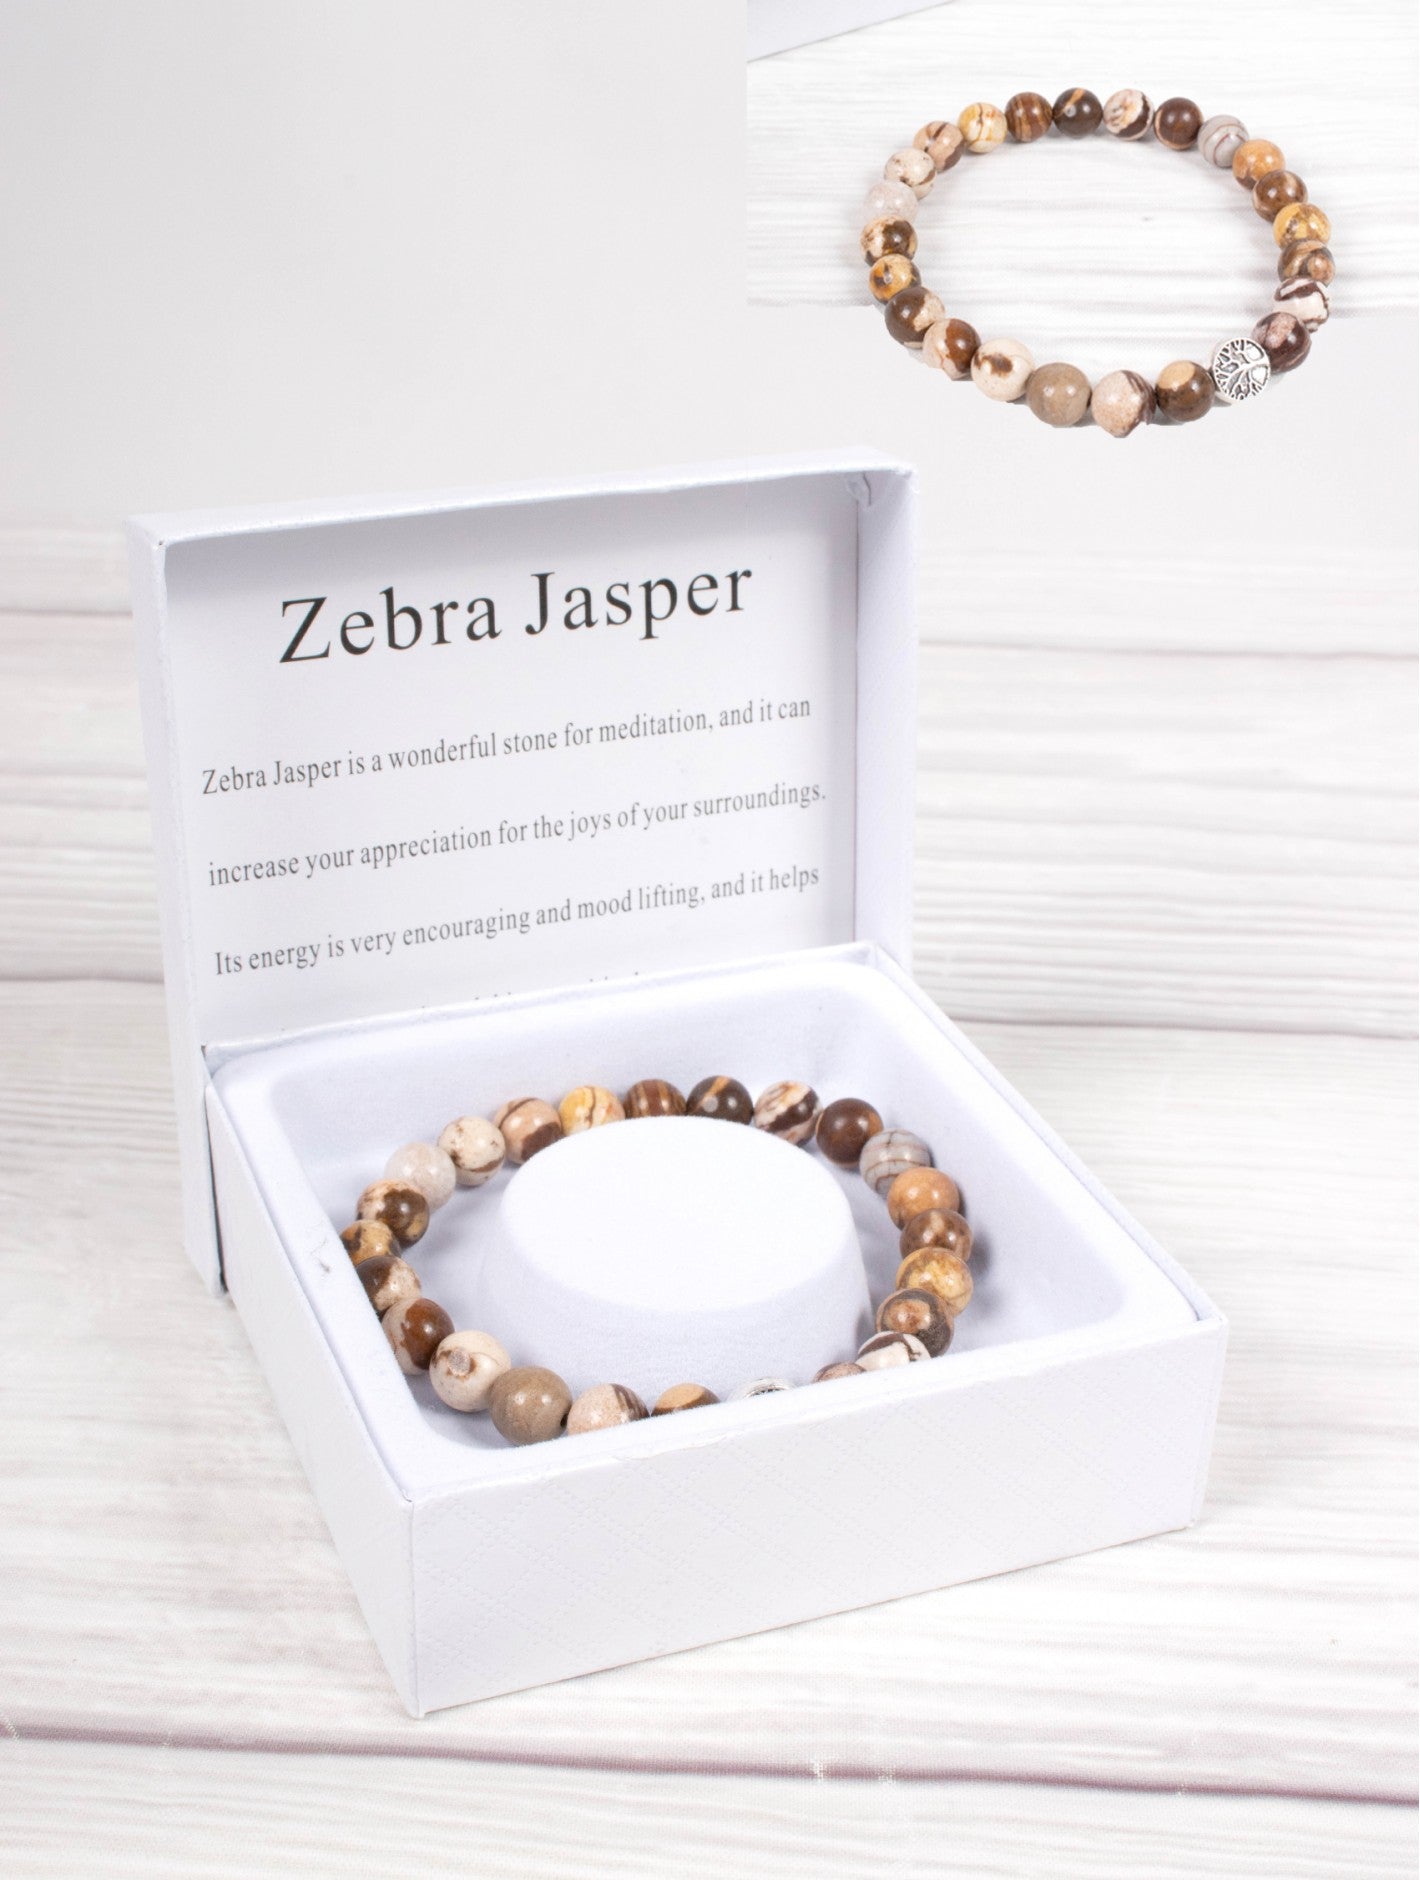 Blessings Bead Bracelet: Zebra Jasper